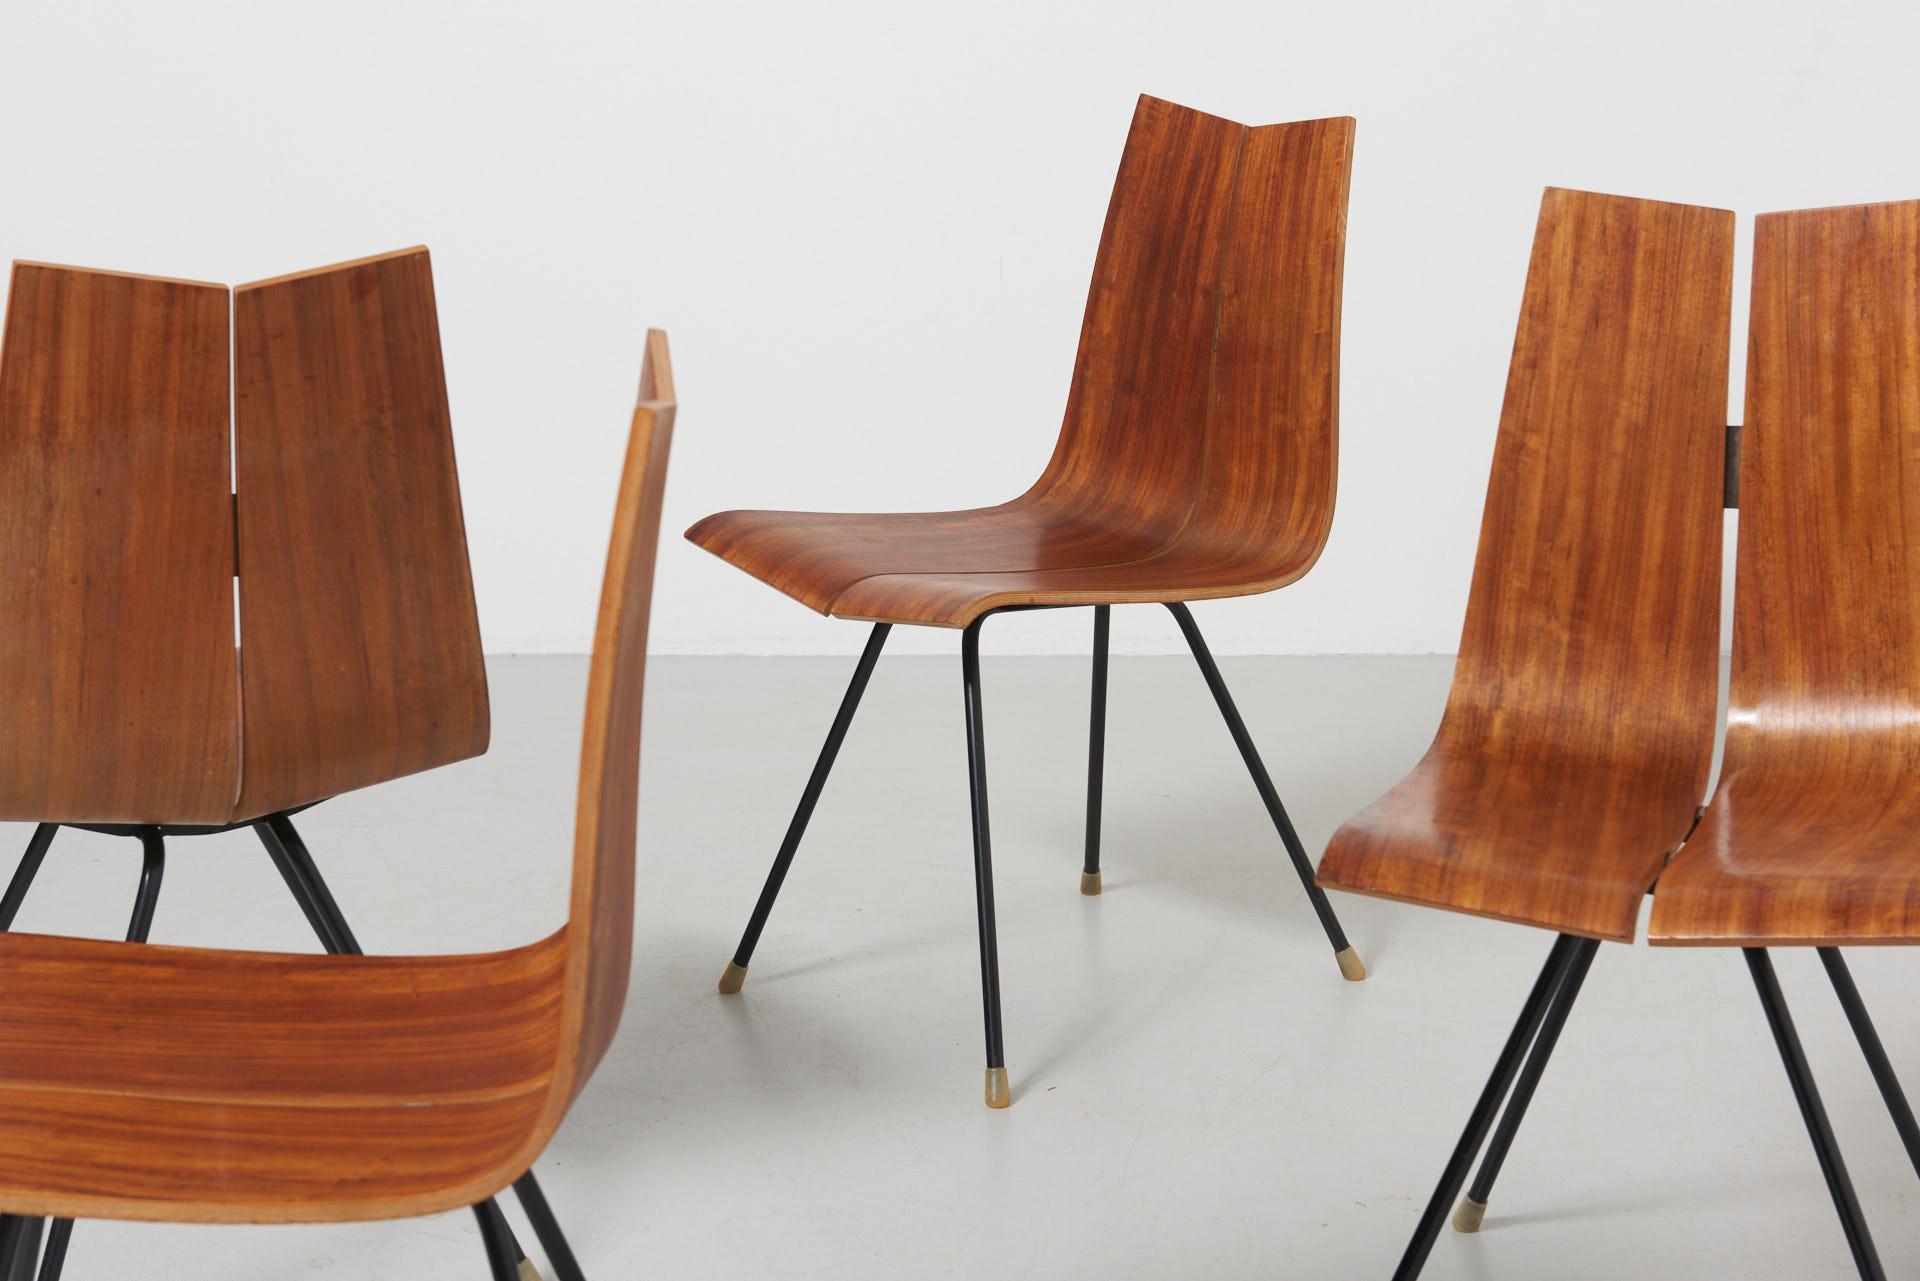 4 'GA' Chairs by Hans Bellmann in 1955, Made by Horgen Glarus in Switzerland 5